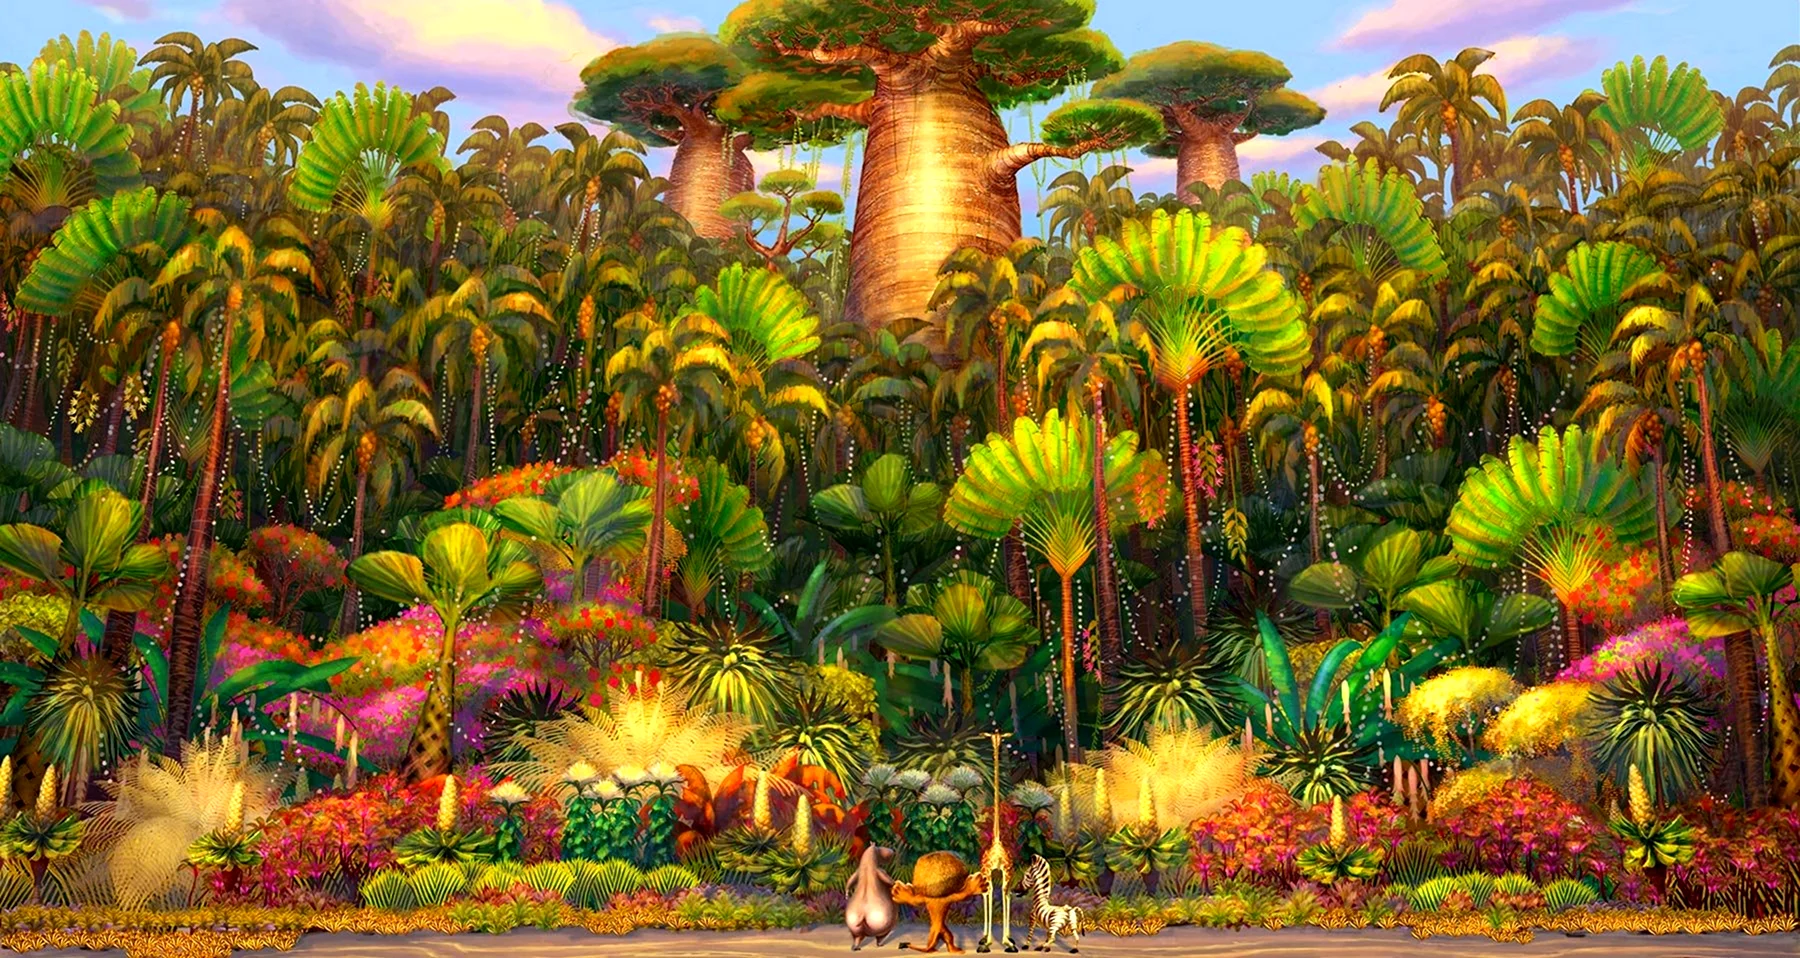 Мадагаскар остров мультфильм